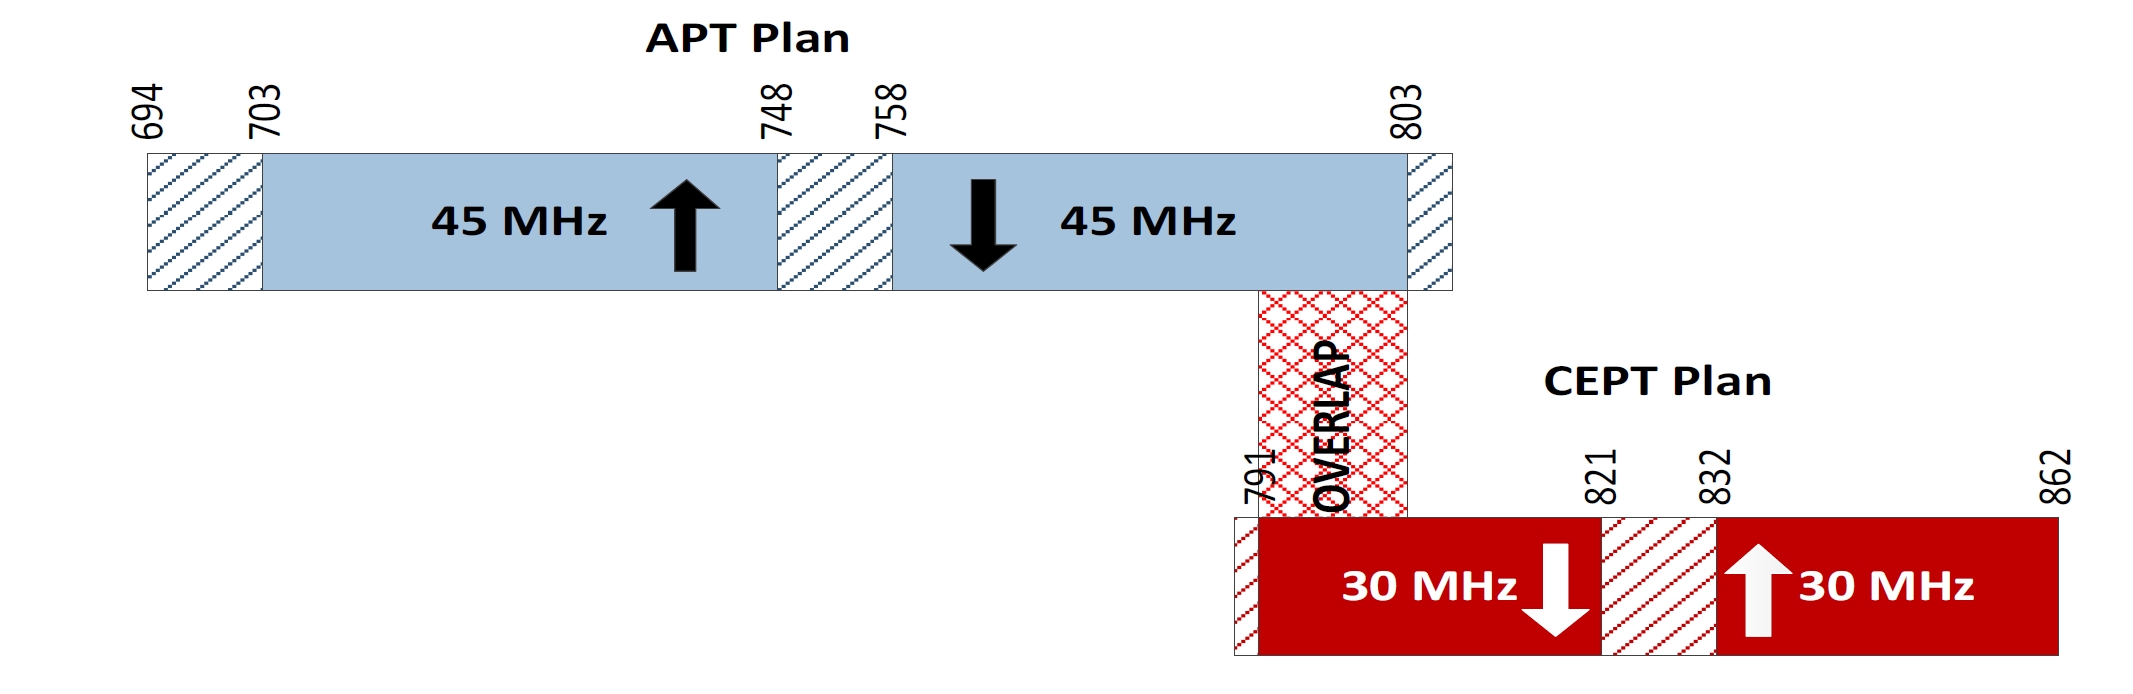 Figure 2 Overlap between the APT Plan in the 700 MHz Band and the CEPT Plan in the 800 MHz Band